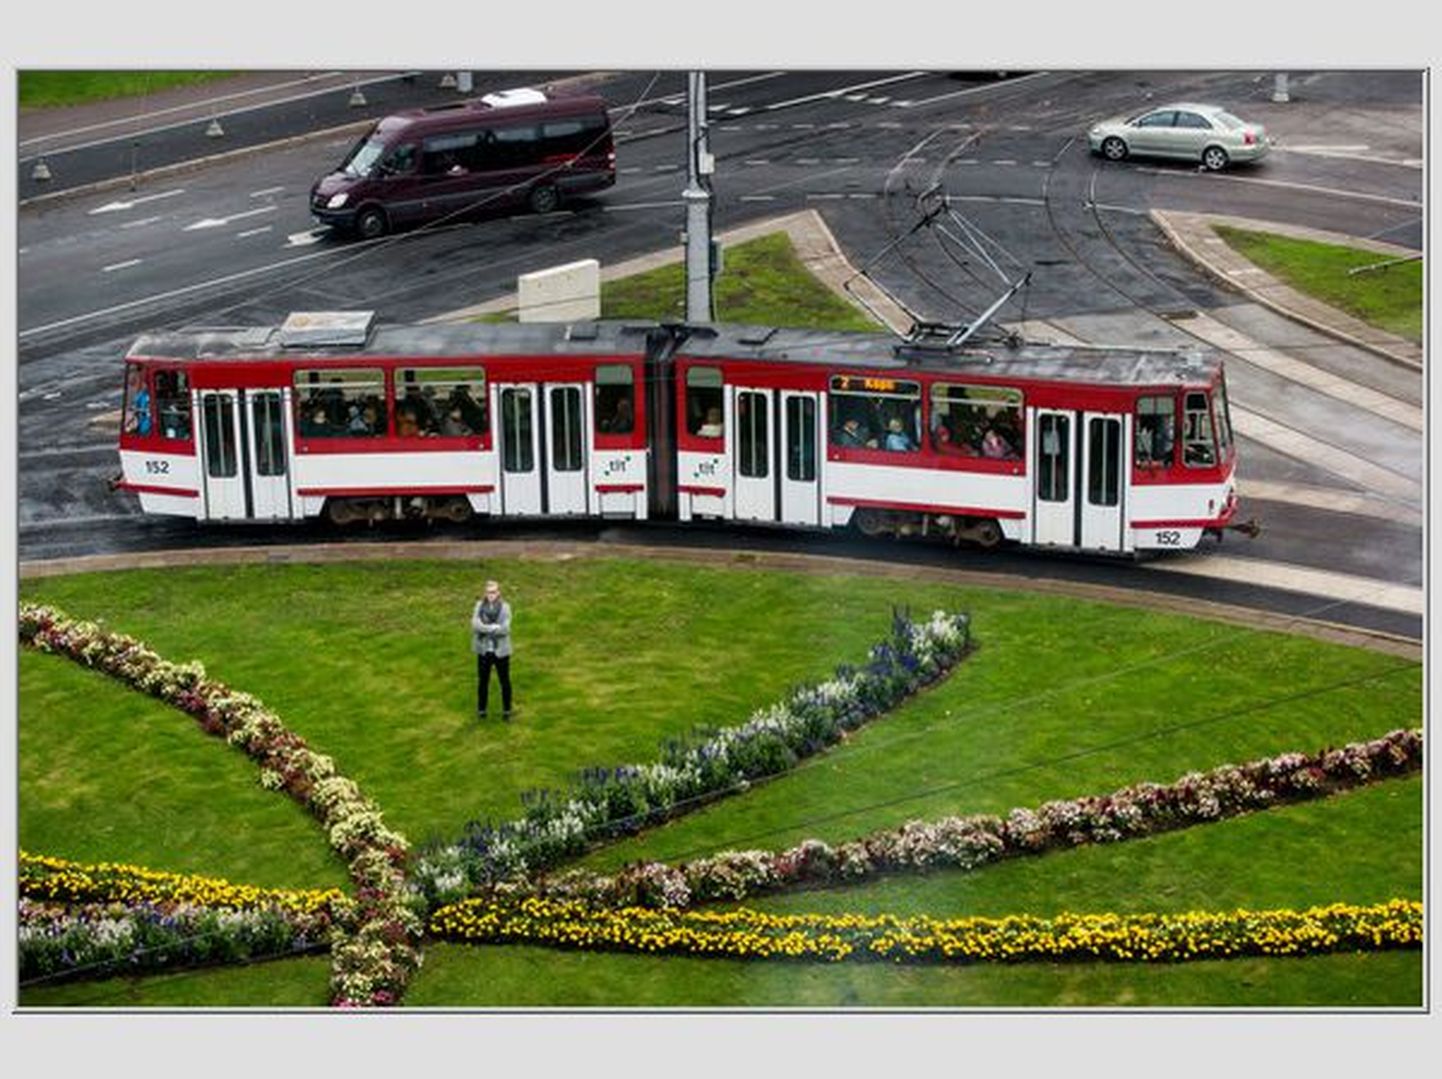 Arhitekt Tõnis Savi on seisukohal, et Viru ringi ruumi saaks otstarbekamalt kasutada kui auto- ja trammiliikluse tarvis.